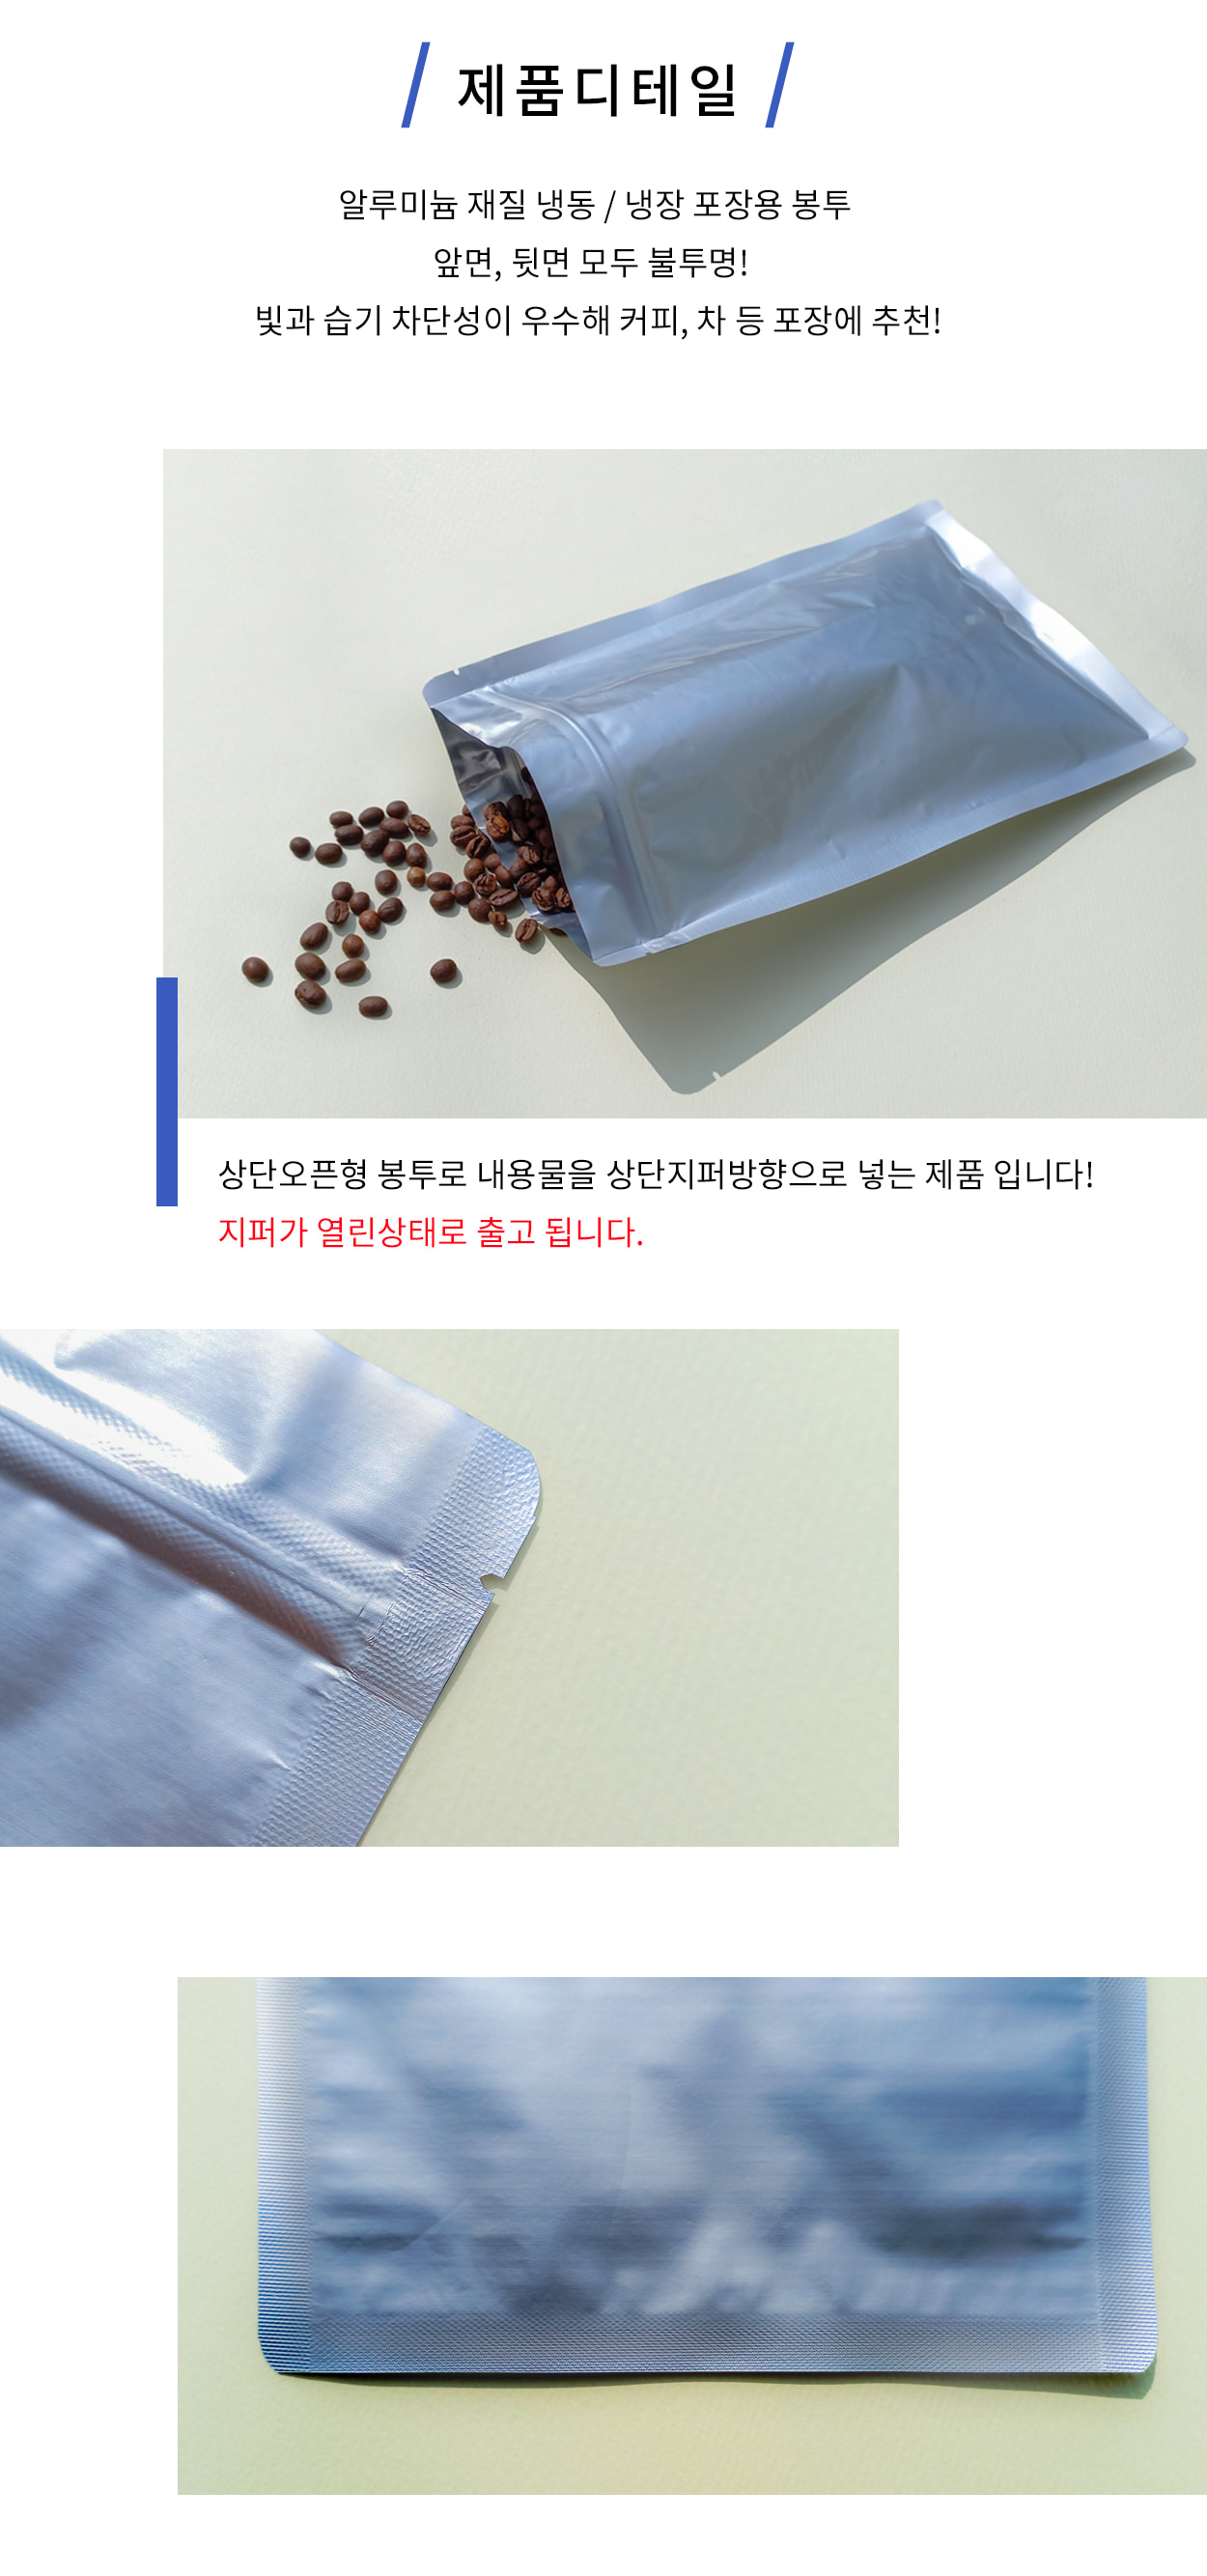 드립커피 티백 보이차 포장 비닐봉투 